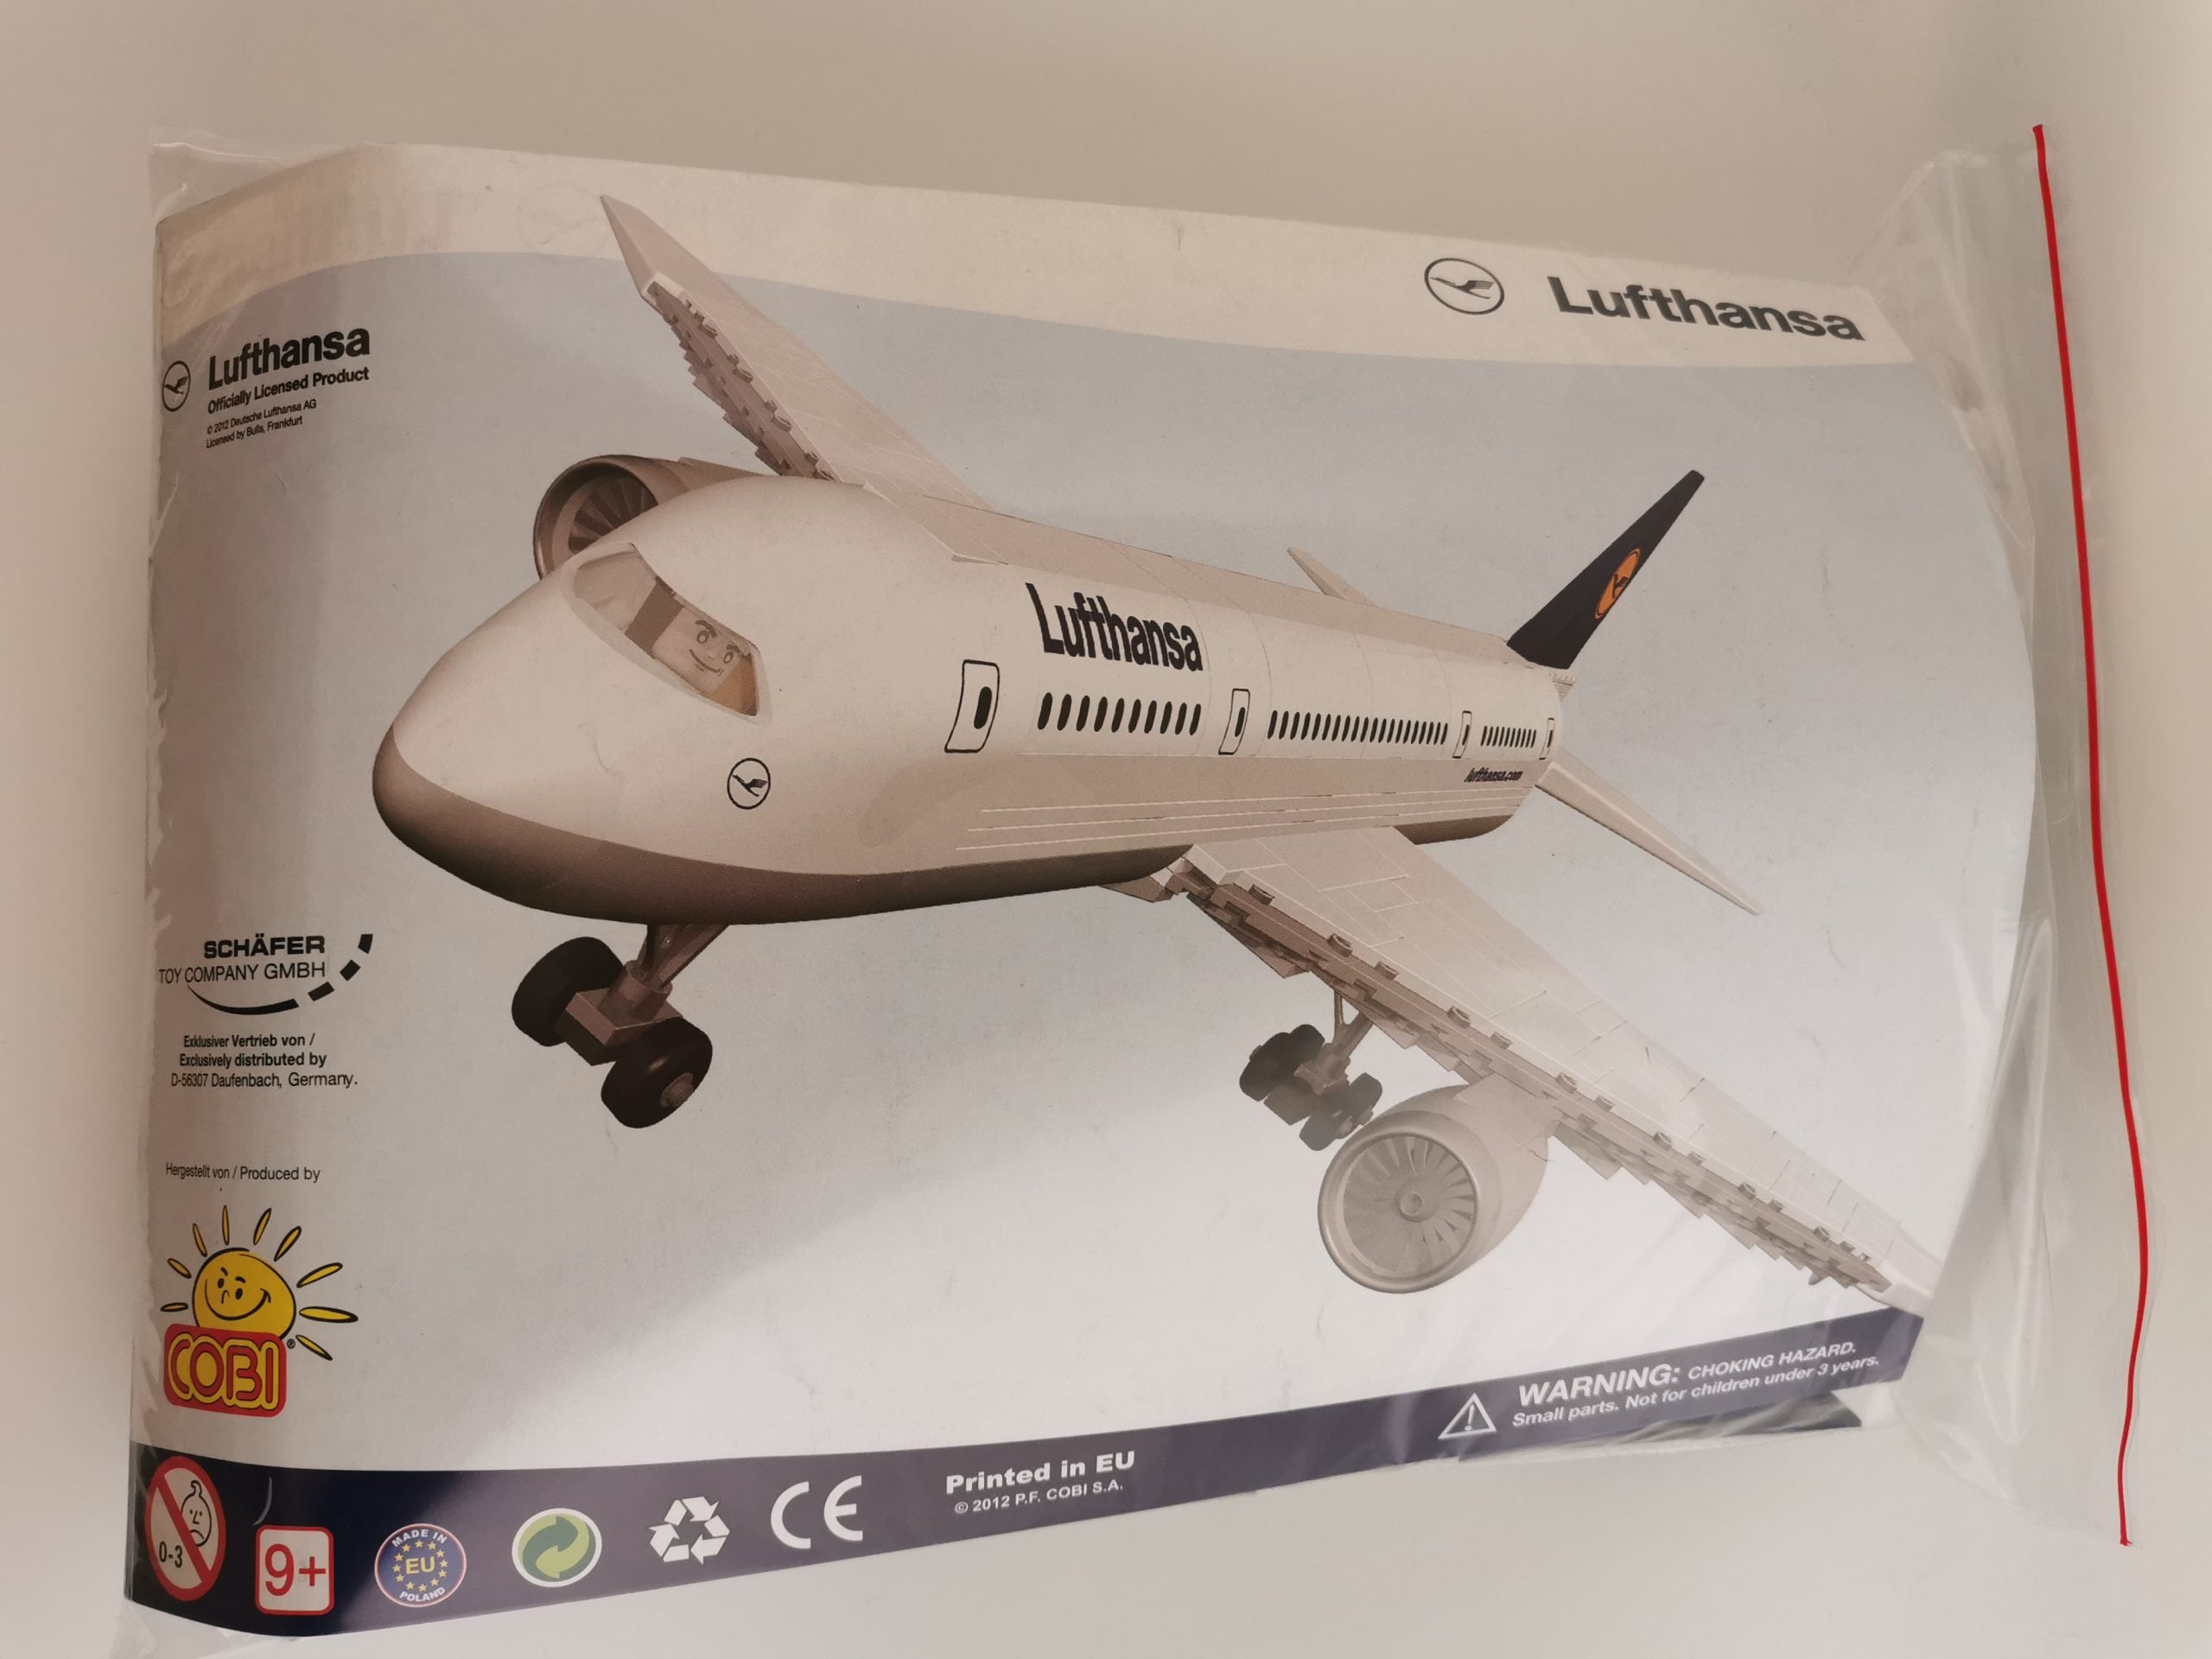 Cobi 099794 Lufthansa LIMITED usado